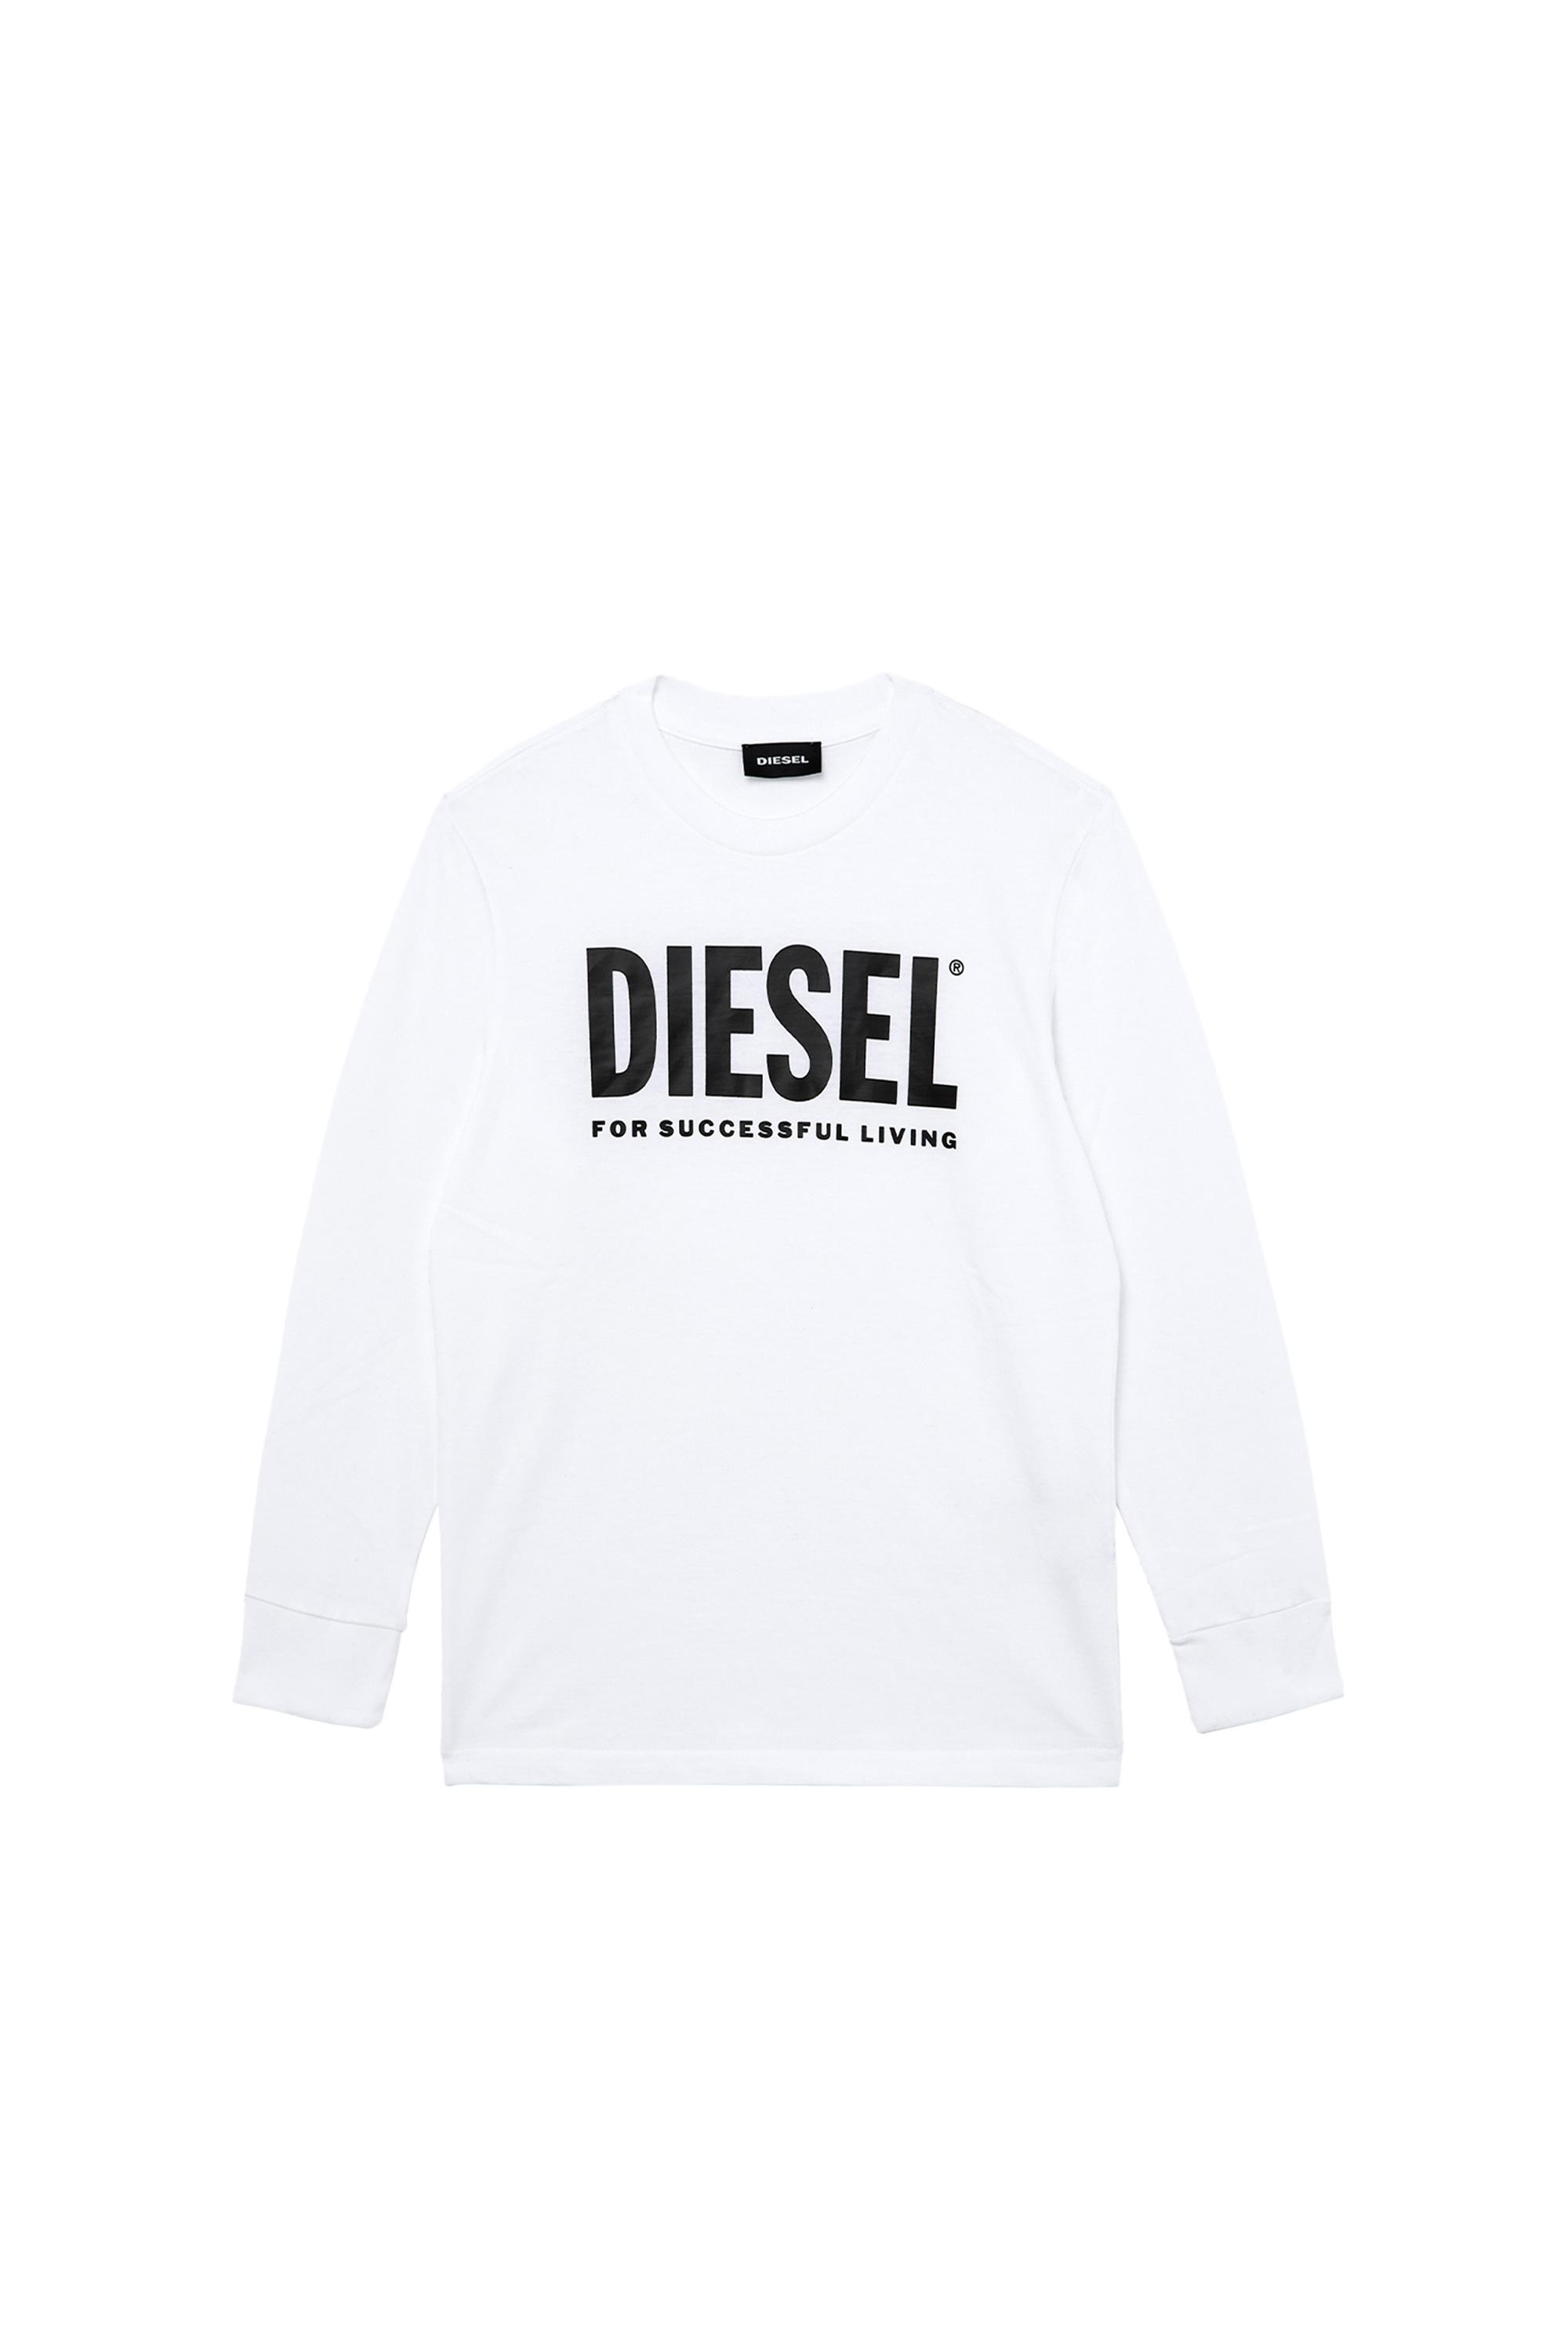 Diesel - TJUSTLOGO ML,  - Image 1